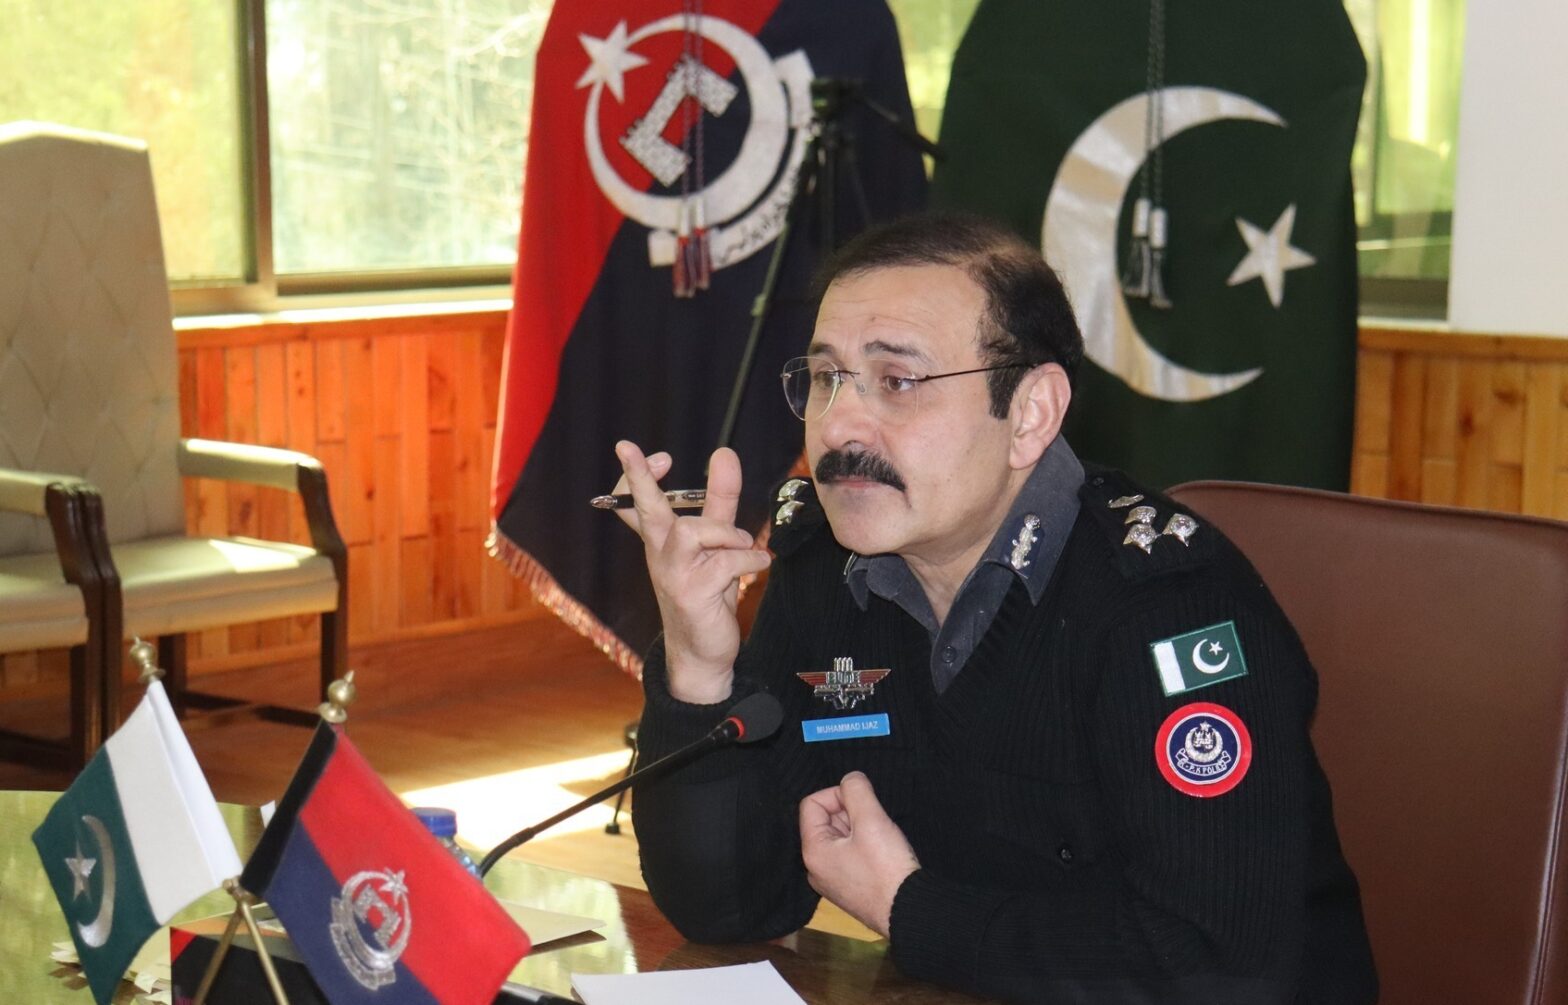 Regional Police Officer emphasizes crackdown on crime, criminals